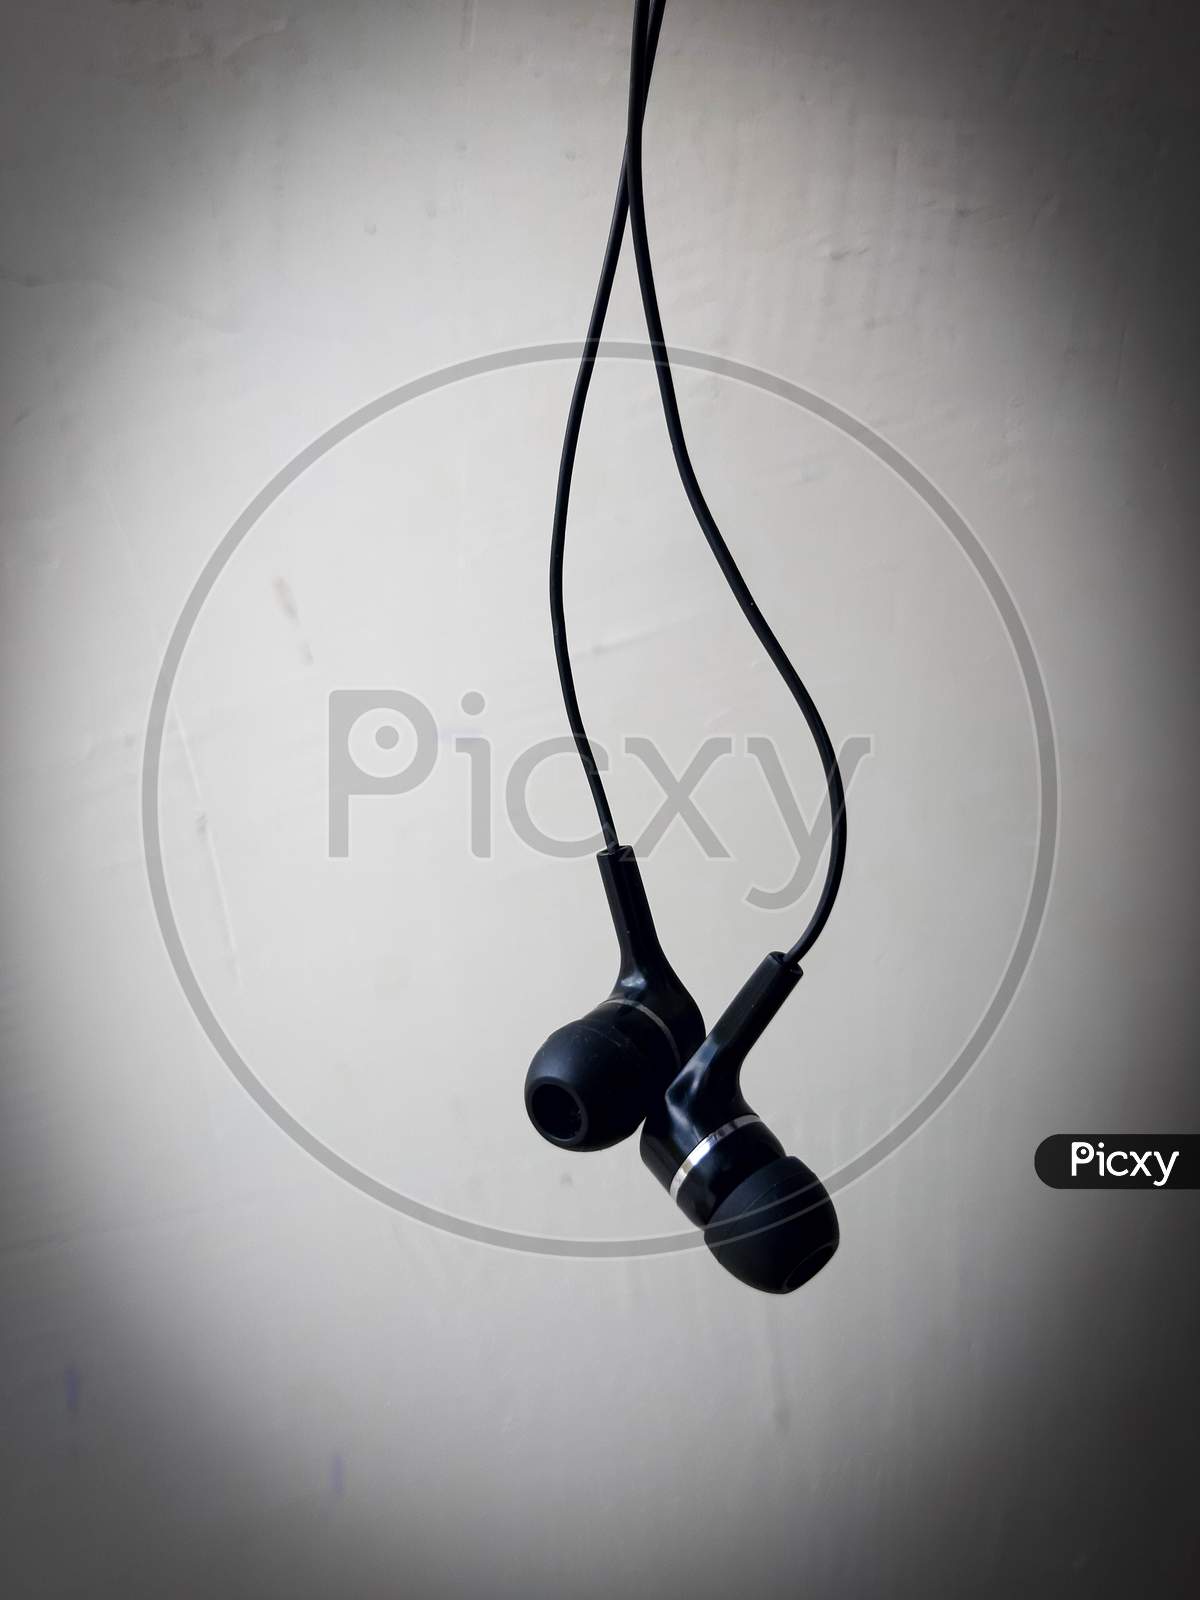 100+] Headphones Pictures | Wallpapers.com